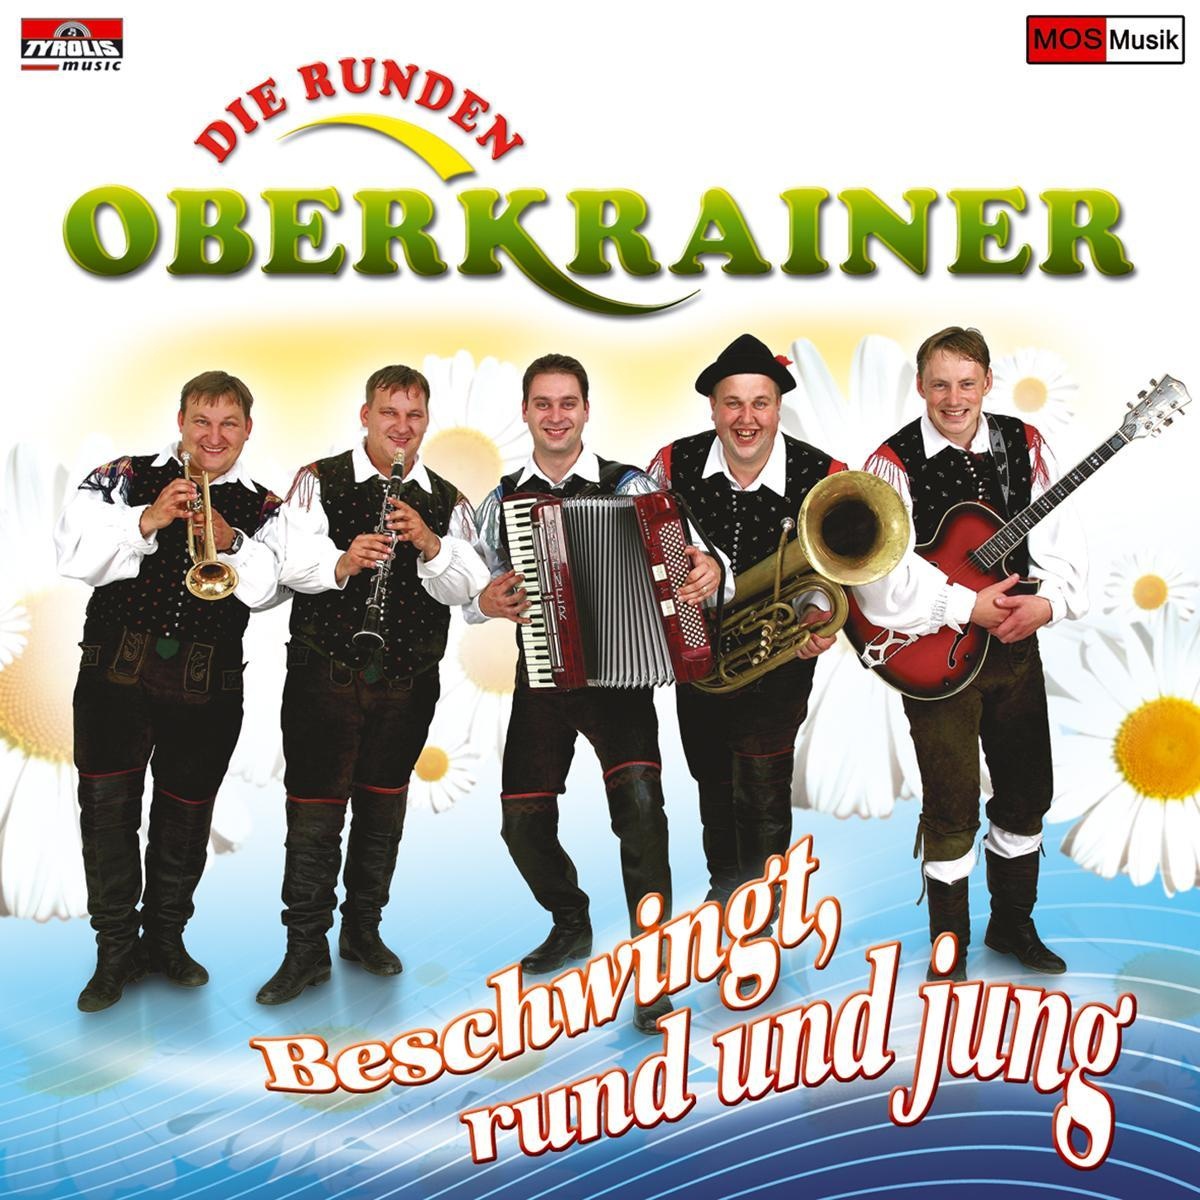 Beschwingt  rund und jung - Die Runden Oberkrainer. (CD)